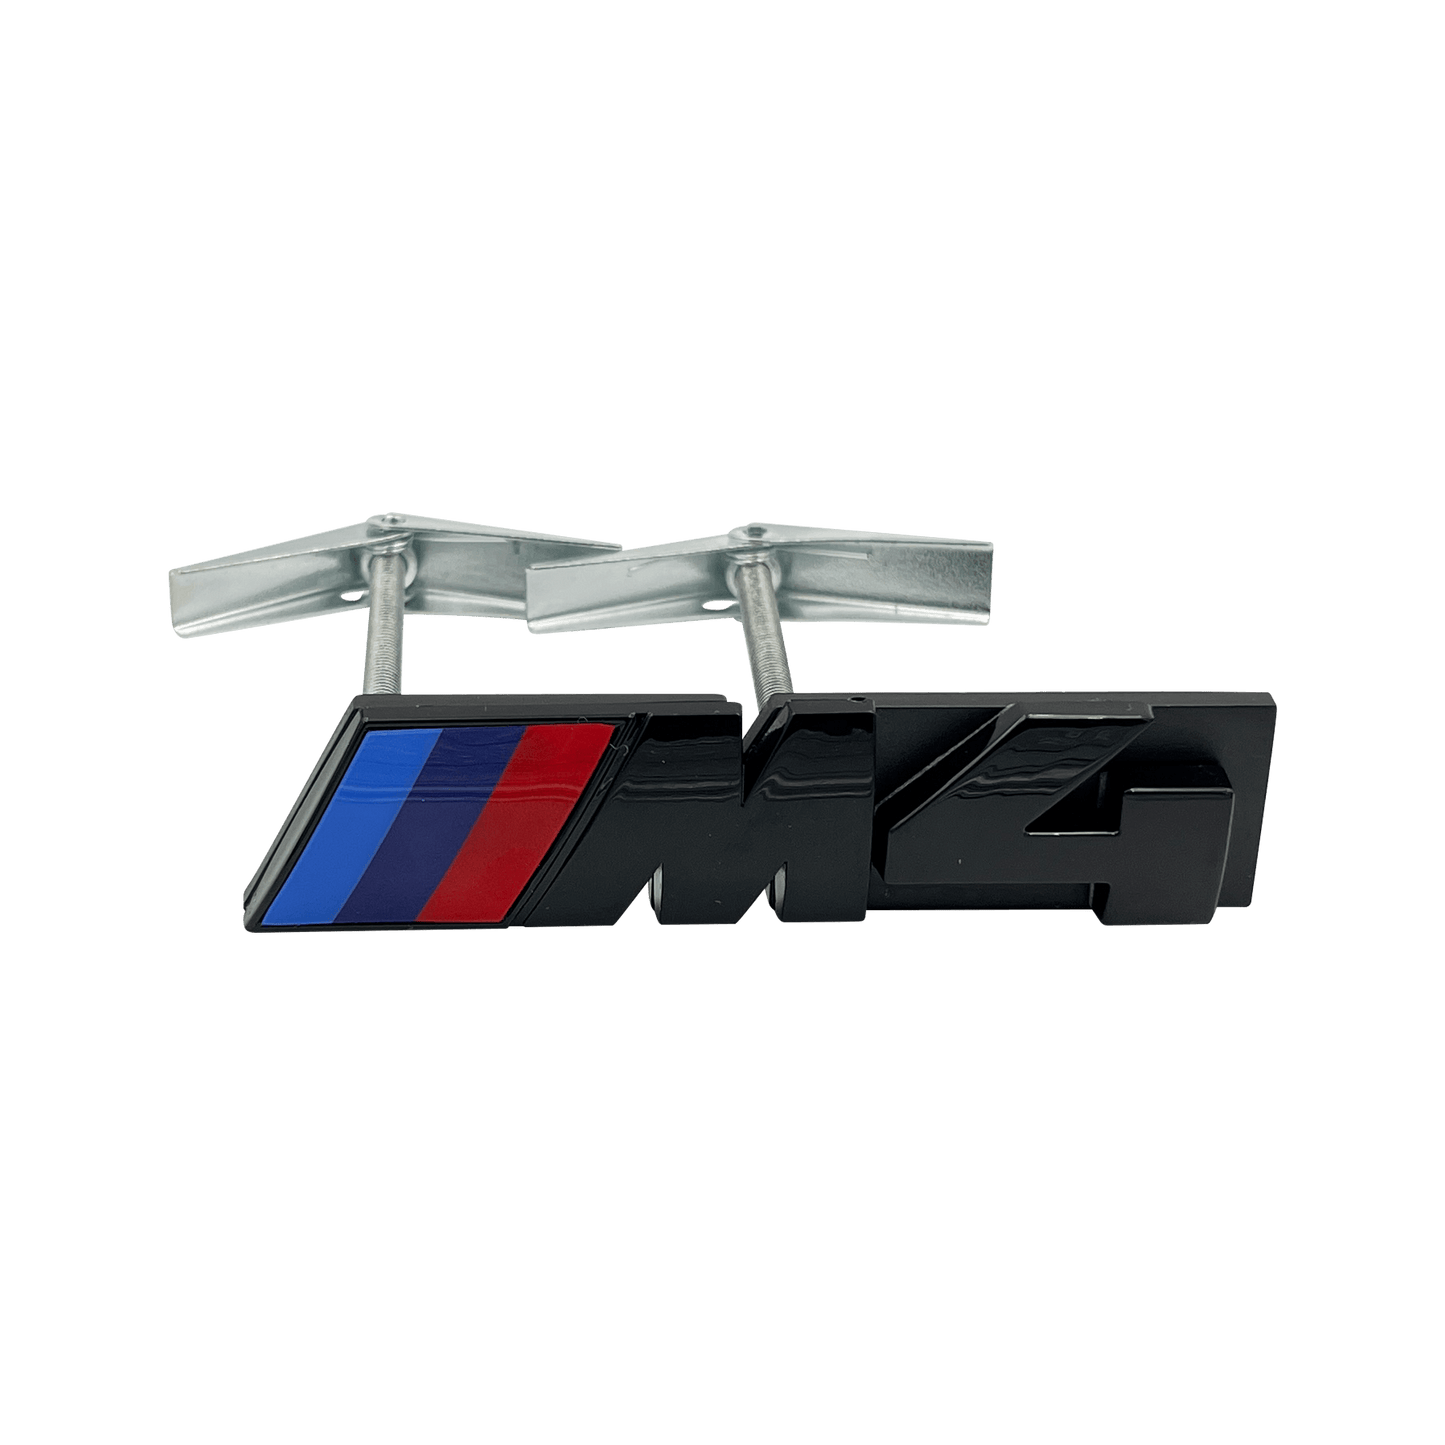 Black BMW M4 Front Emblem Badge 